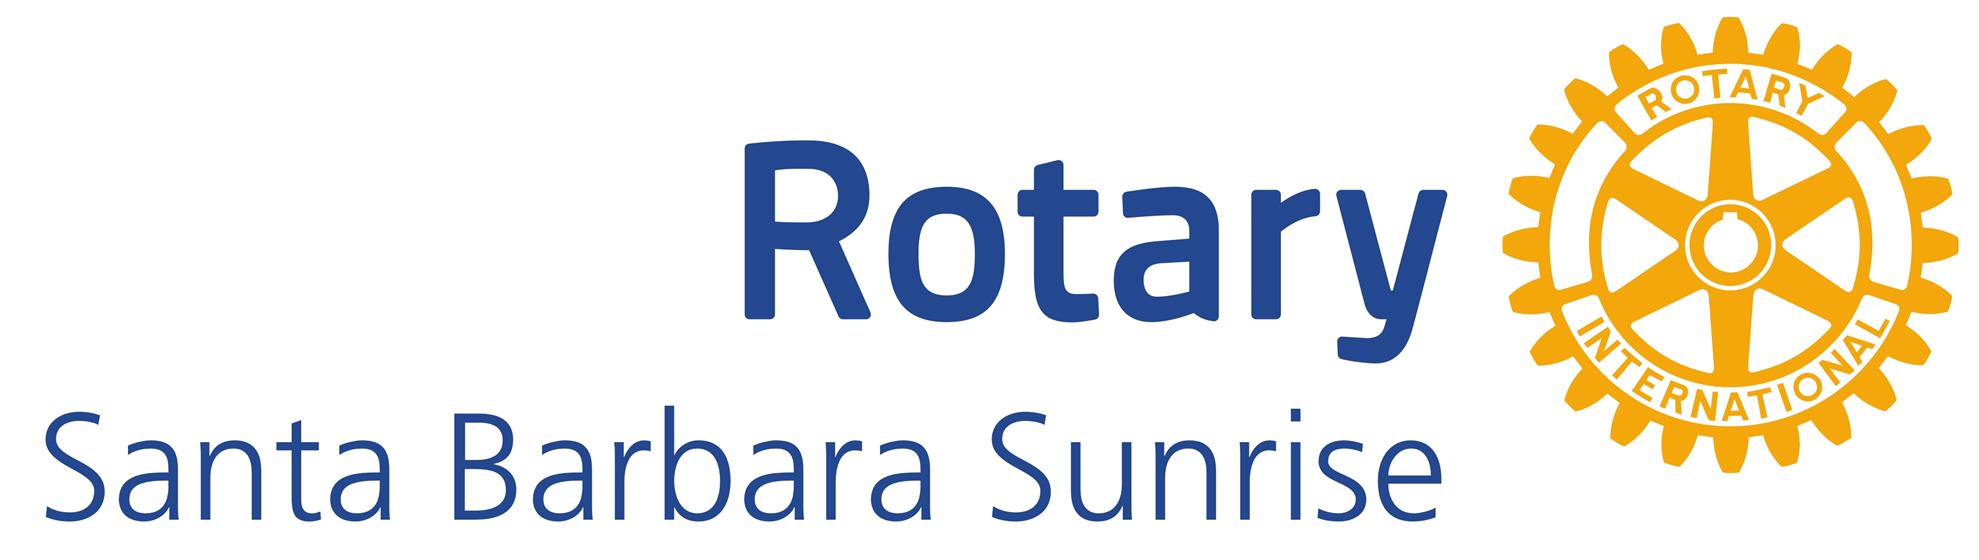 Santa Barbara Sunris logo